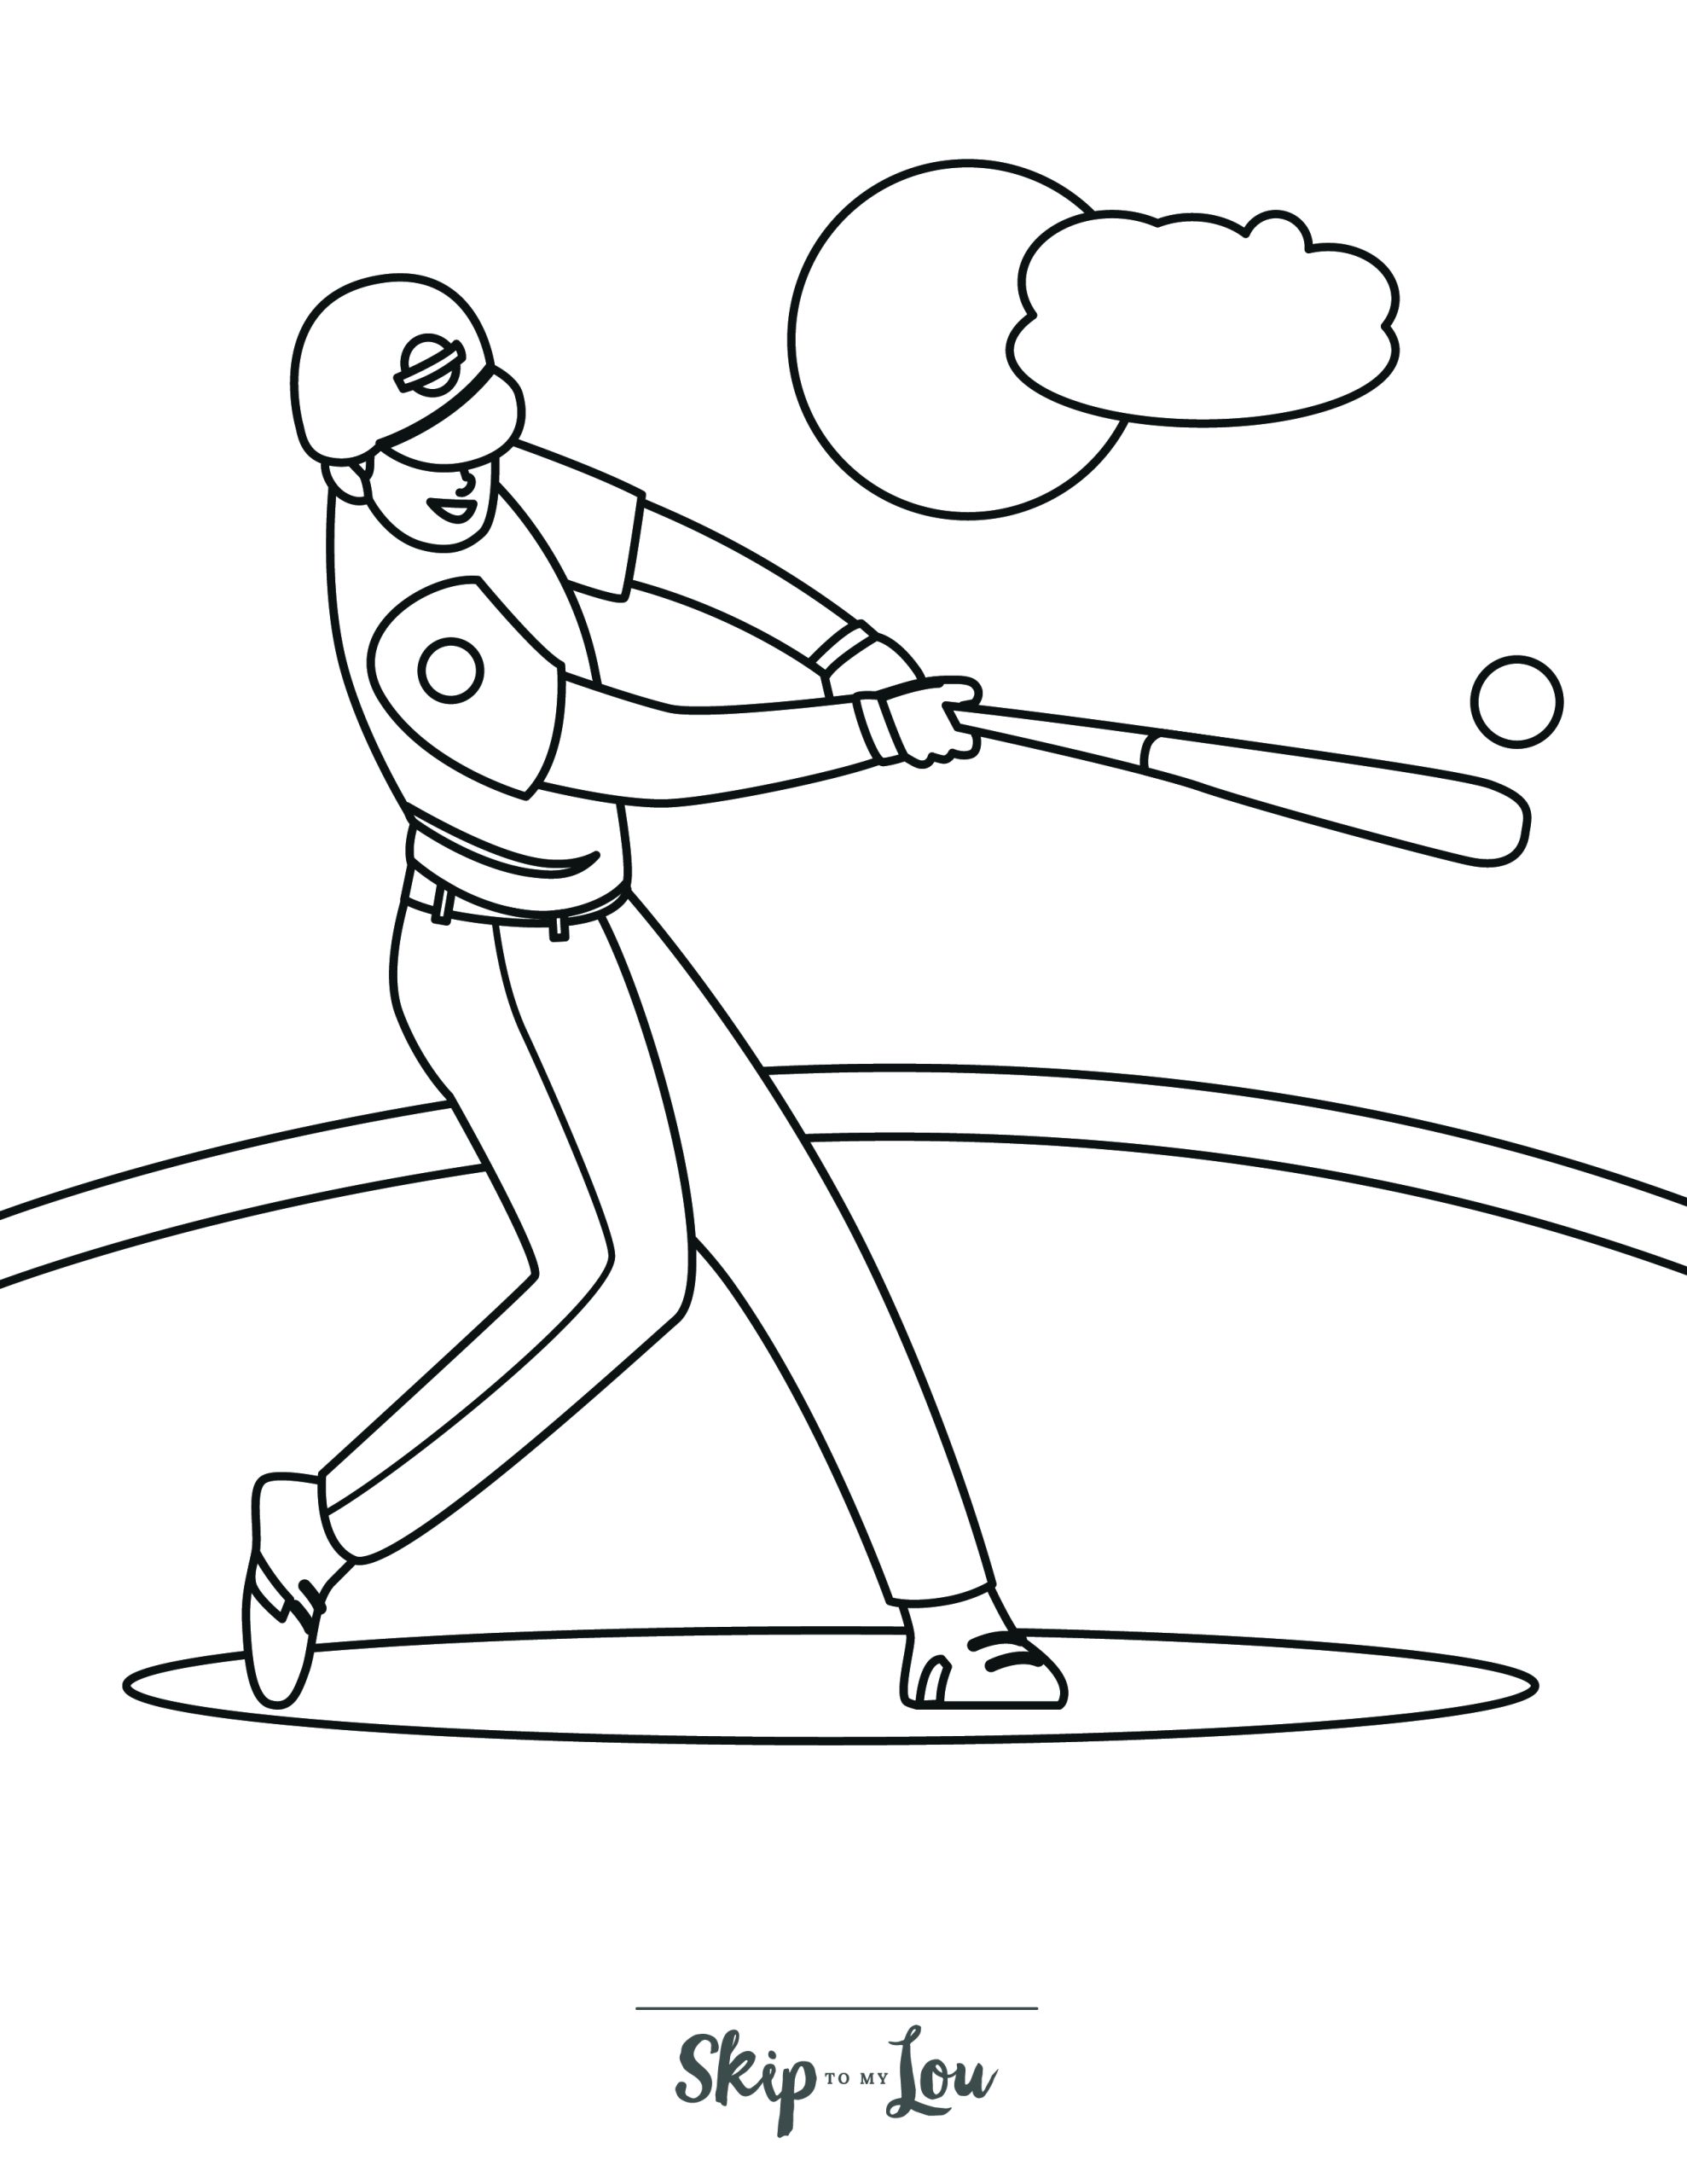 Baseball Coloring Page 11 - A line drawing of a baseball batsman swinging his bat to hit a ball.